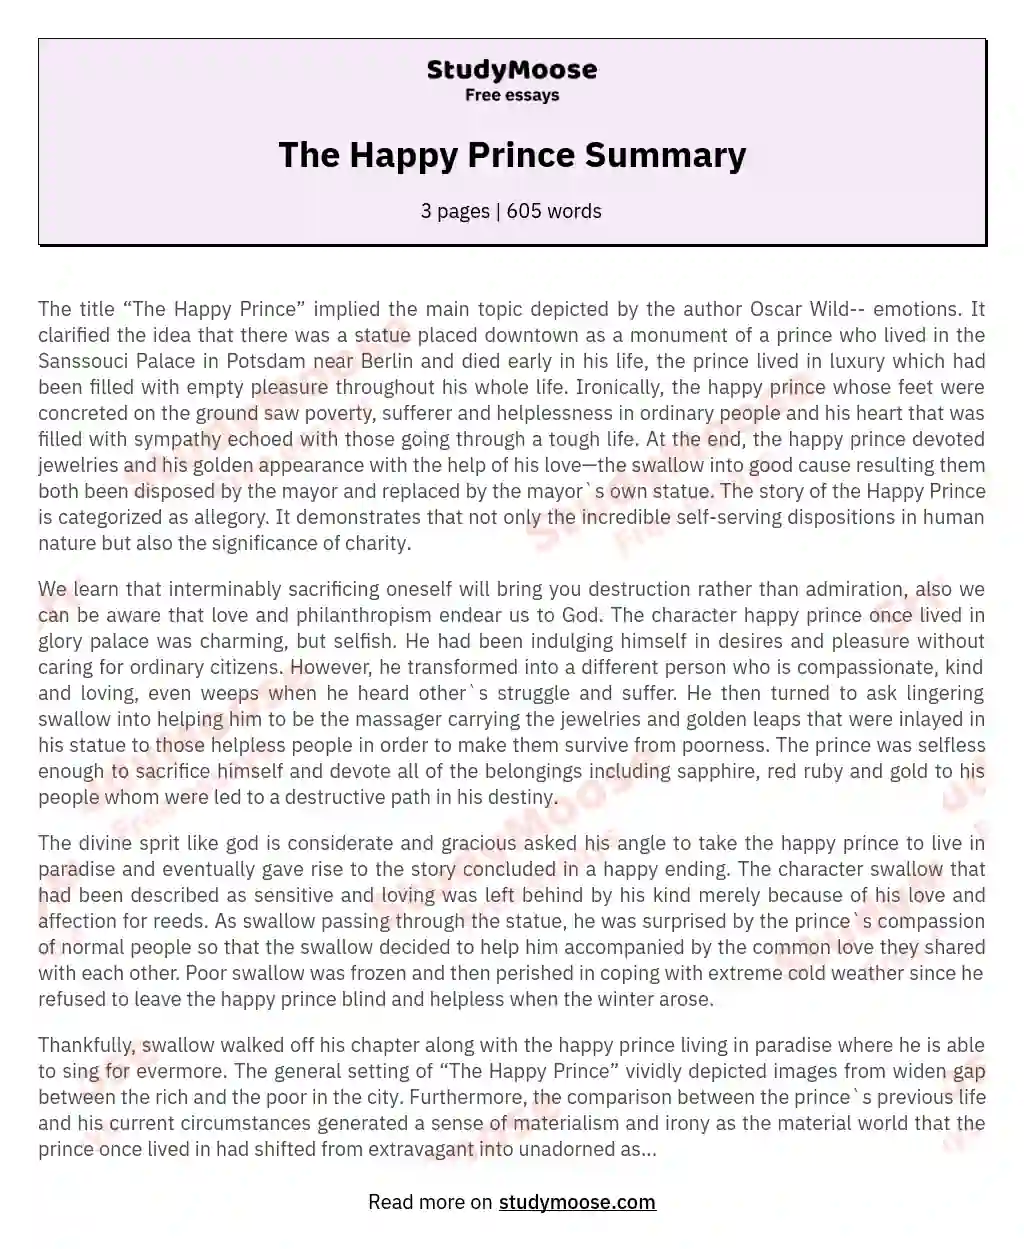 The Happy Prince Summary essay